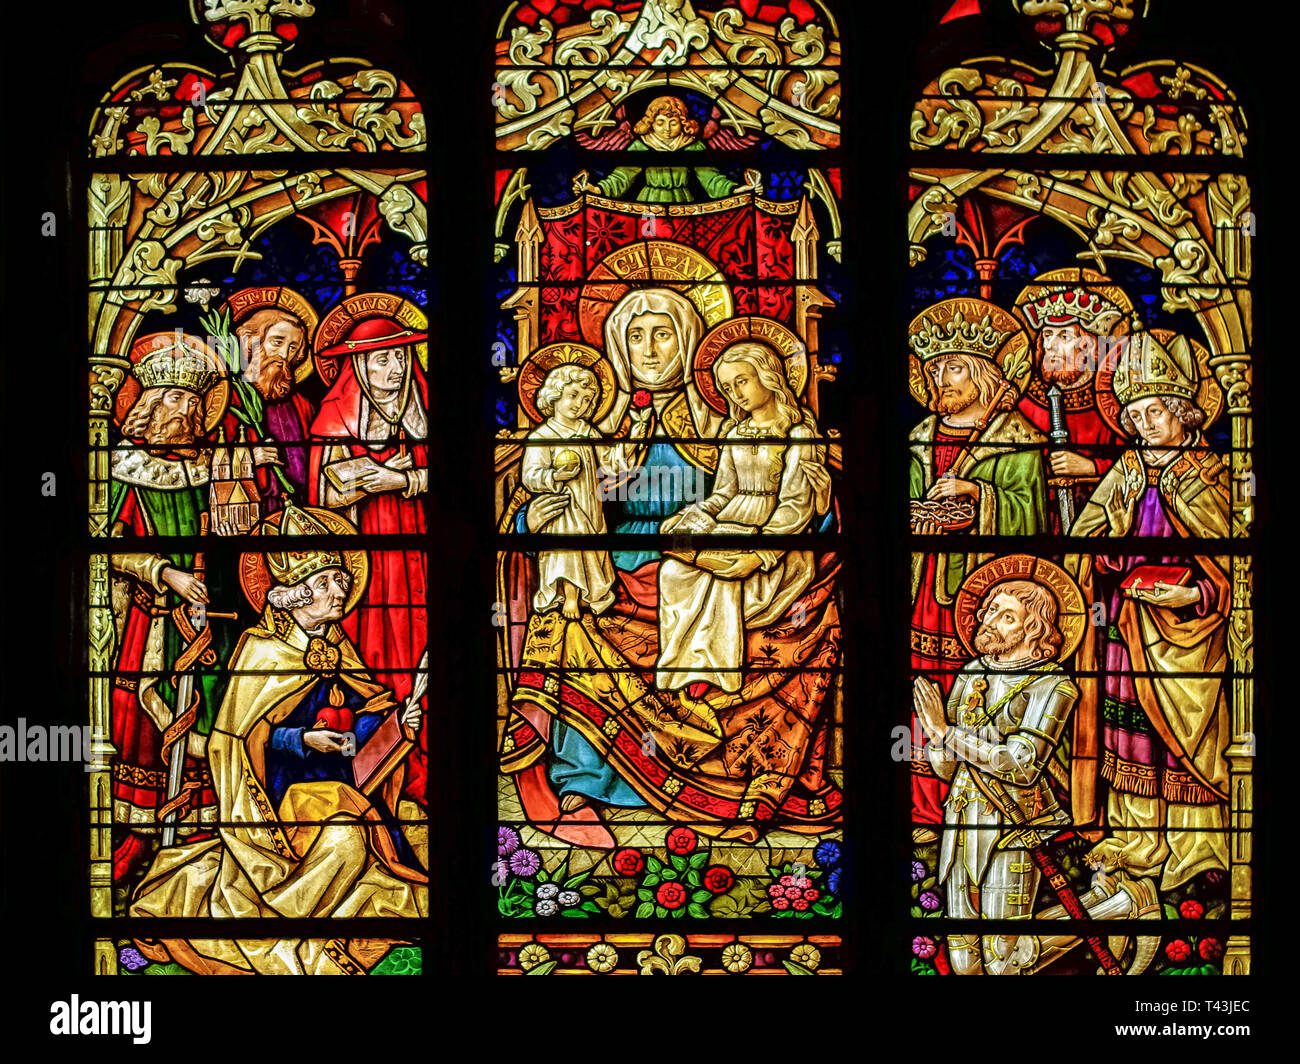 Vidriera de la catedral cristiana de Canterbury, en Inglaterra, cuyas imágenes reflejan curaciones milagrosas